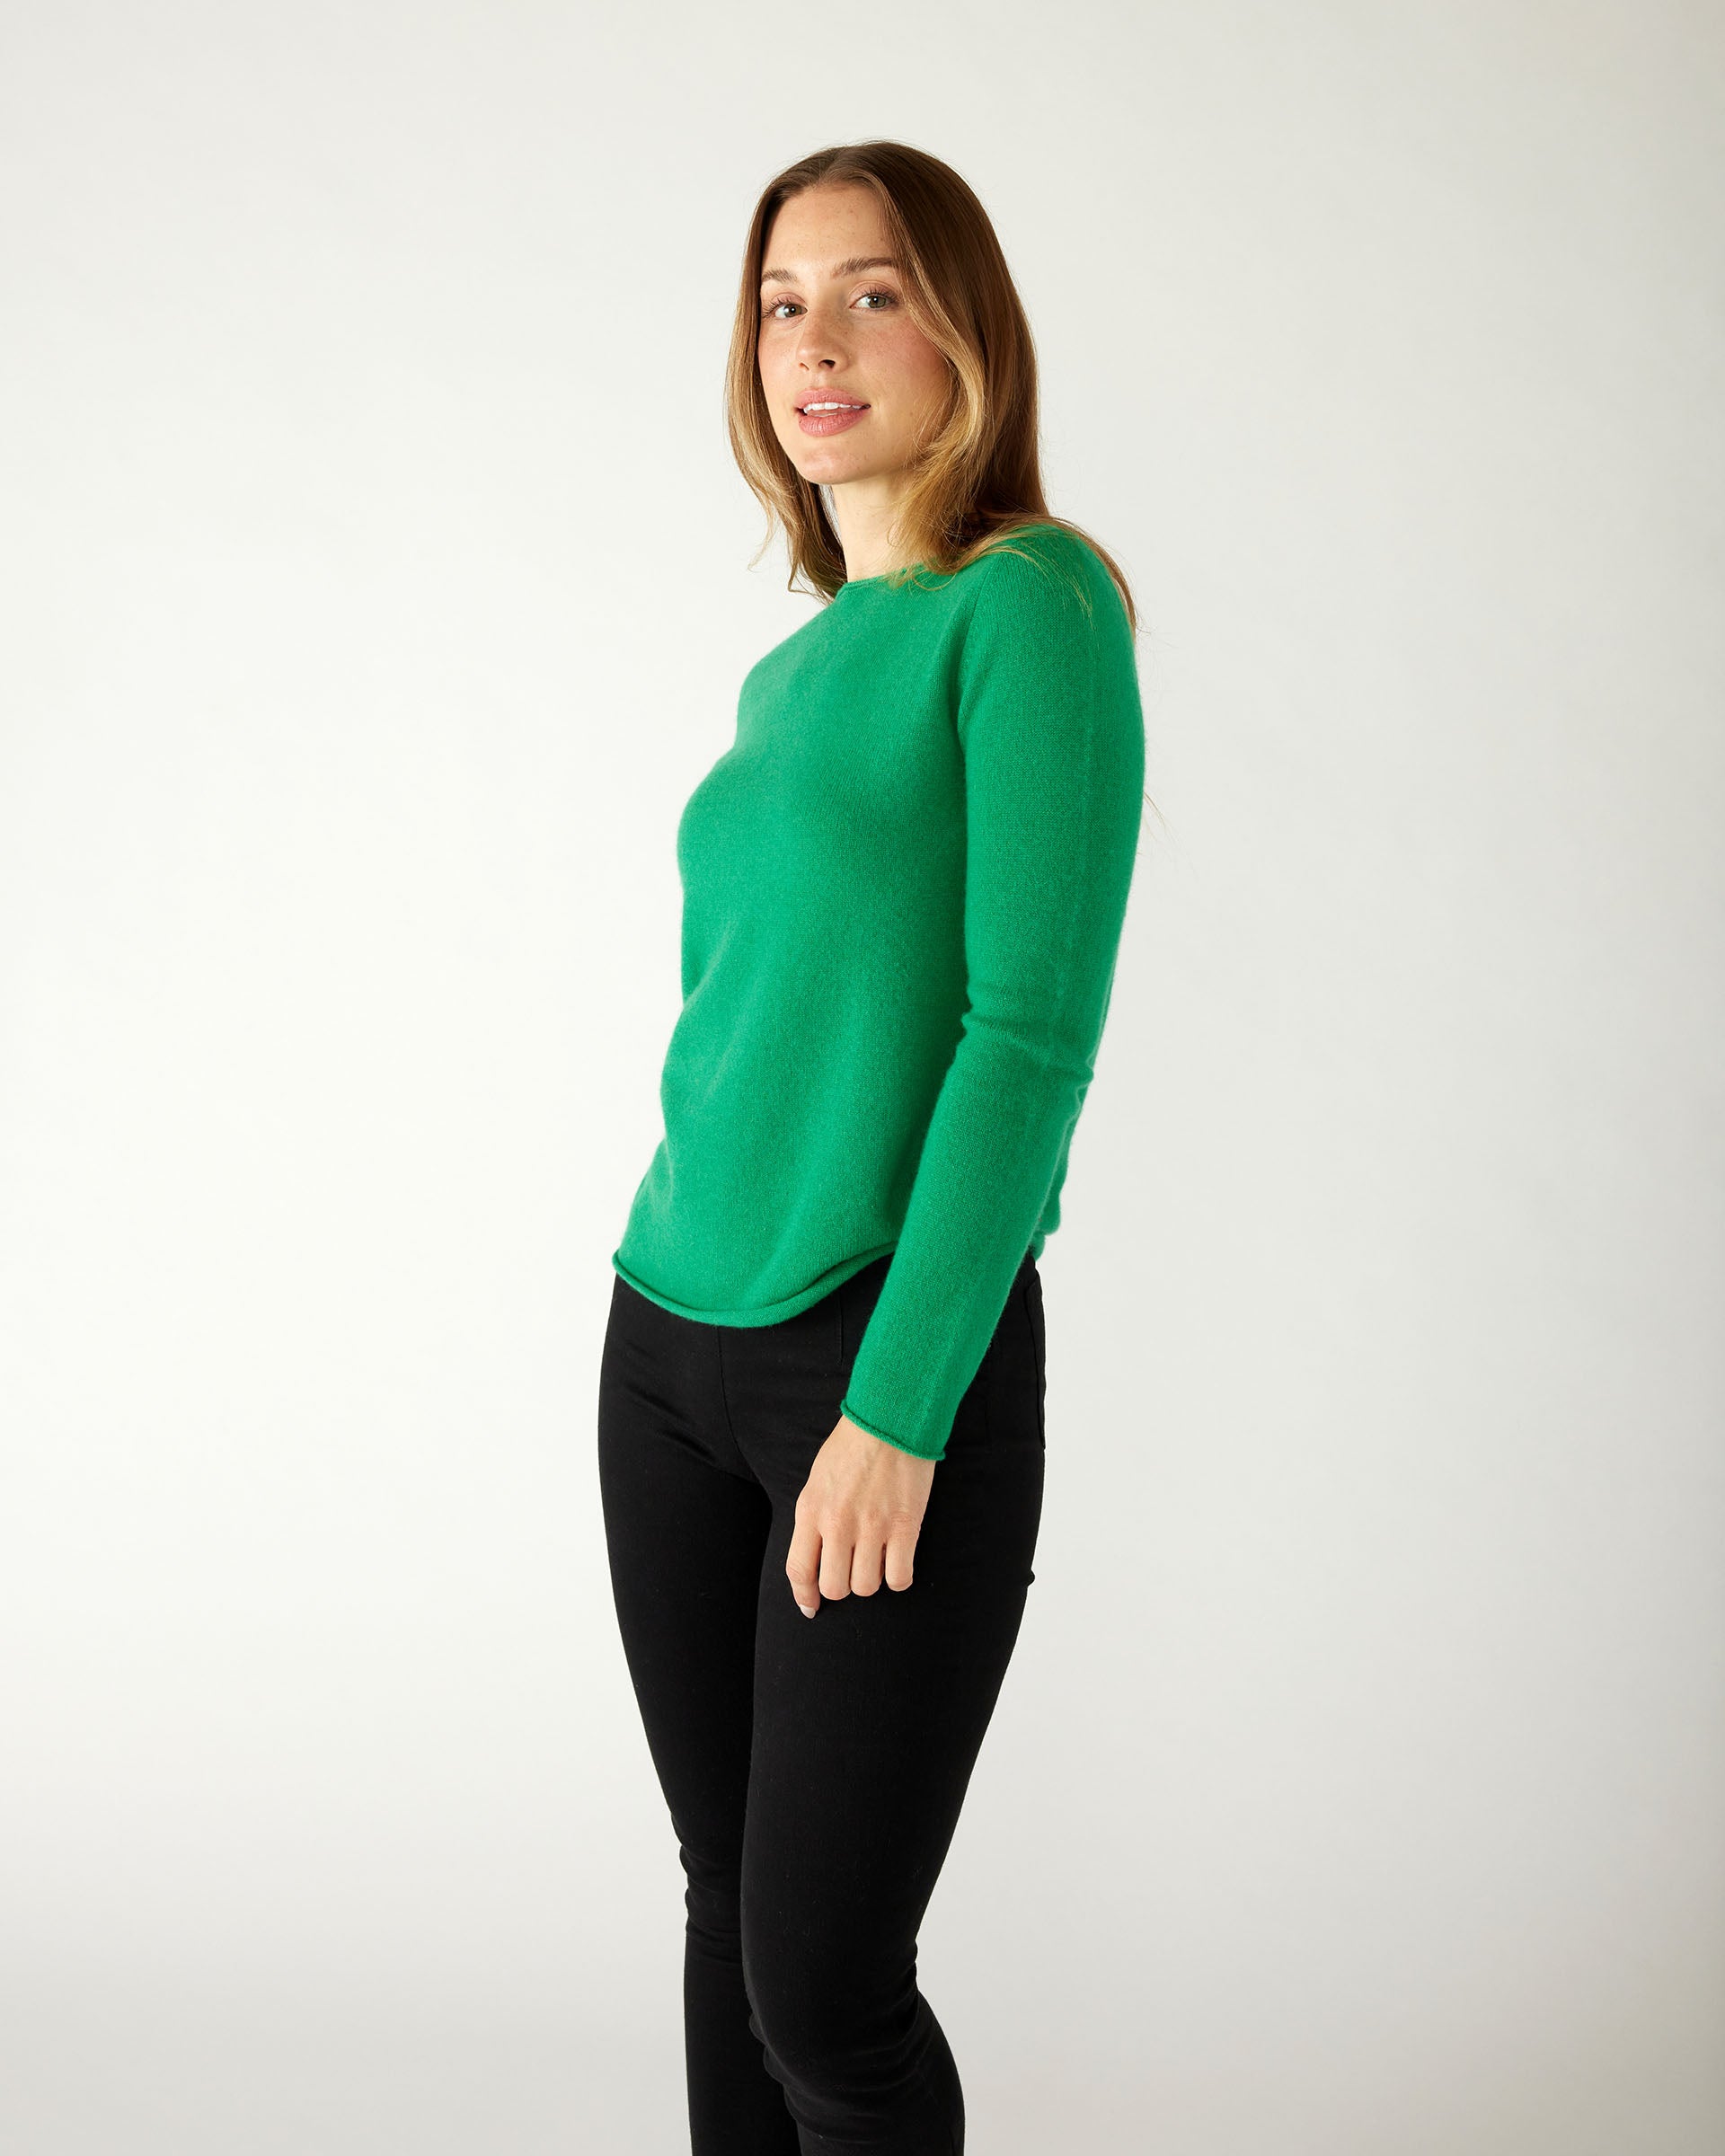 profile of woman wearing mersea carmel sweater in jade